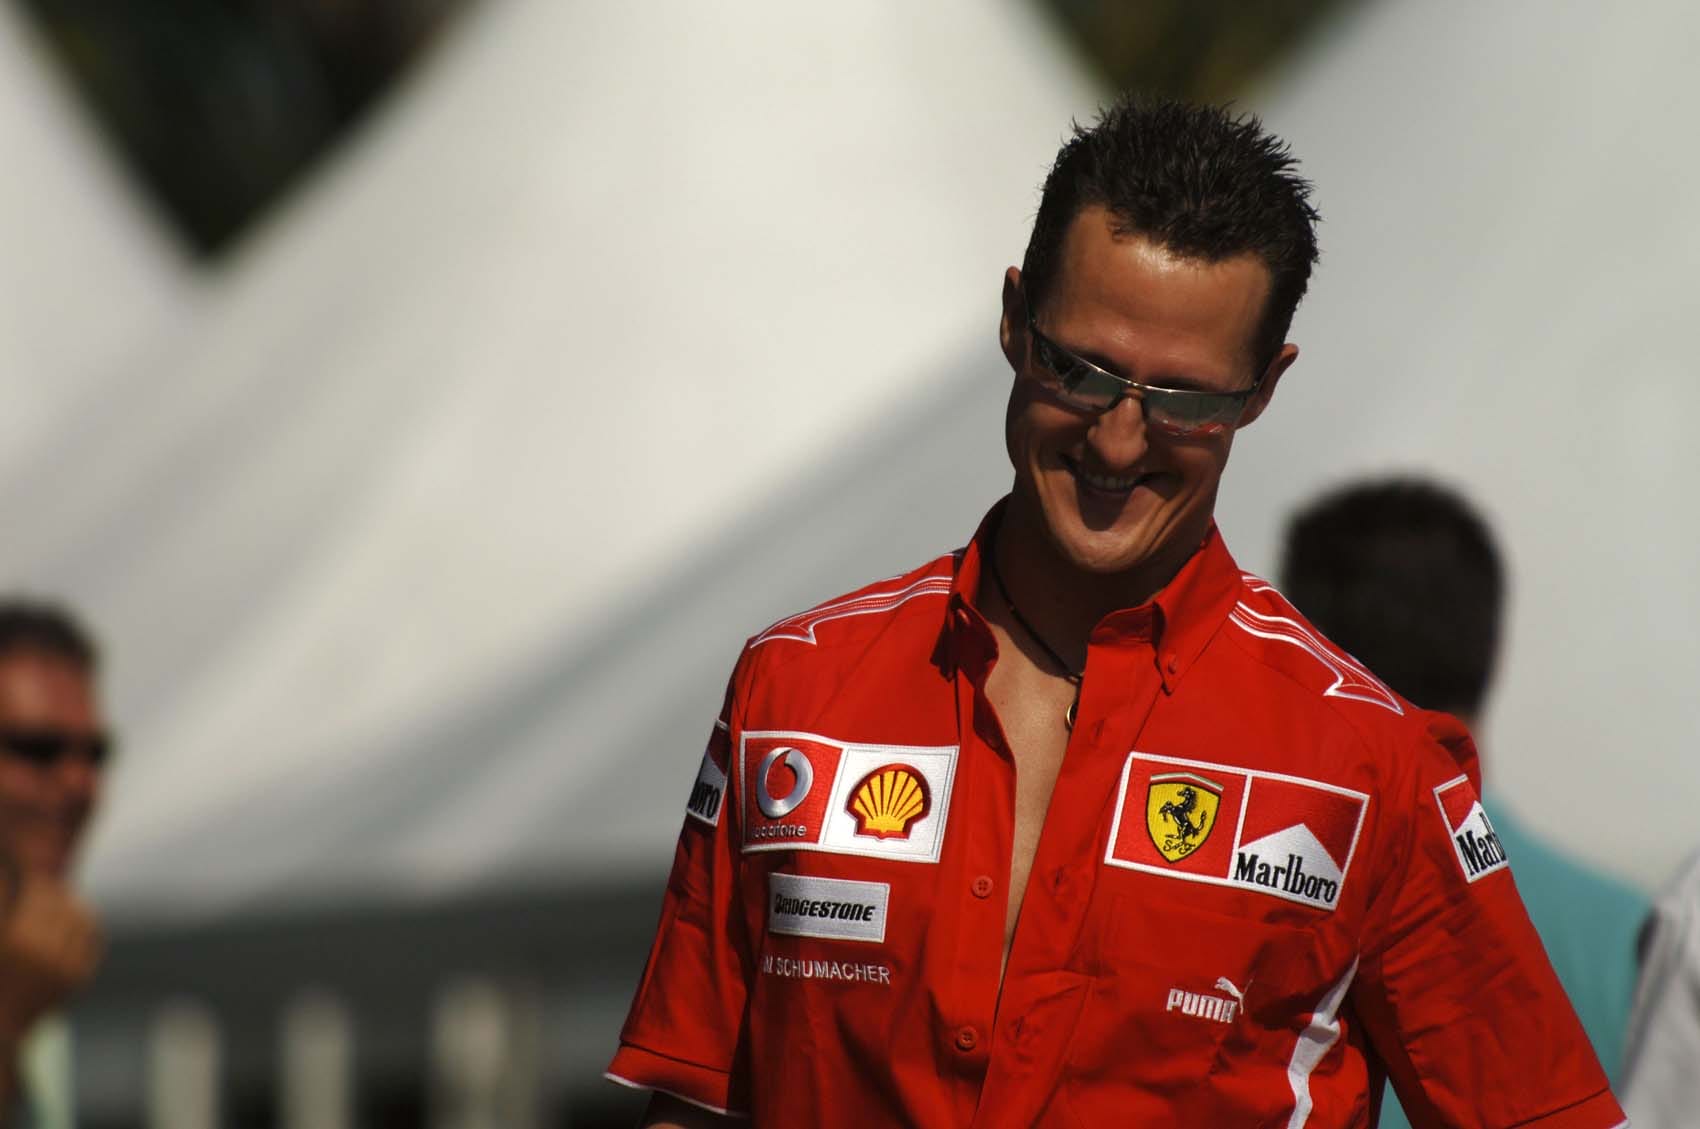 Kárpótlás a jogtalan támadás után: Michael Schumacher családjának kártérítést ítéltek